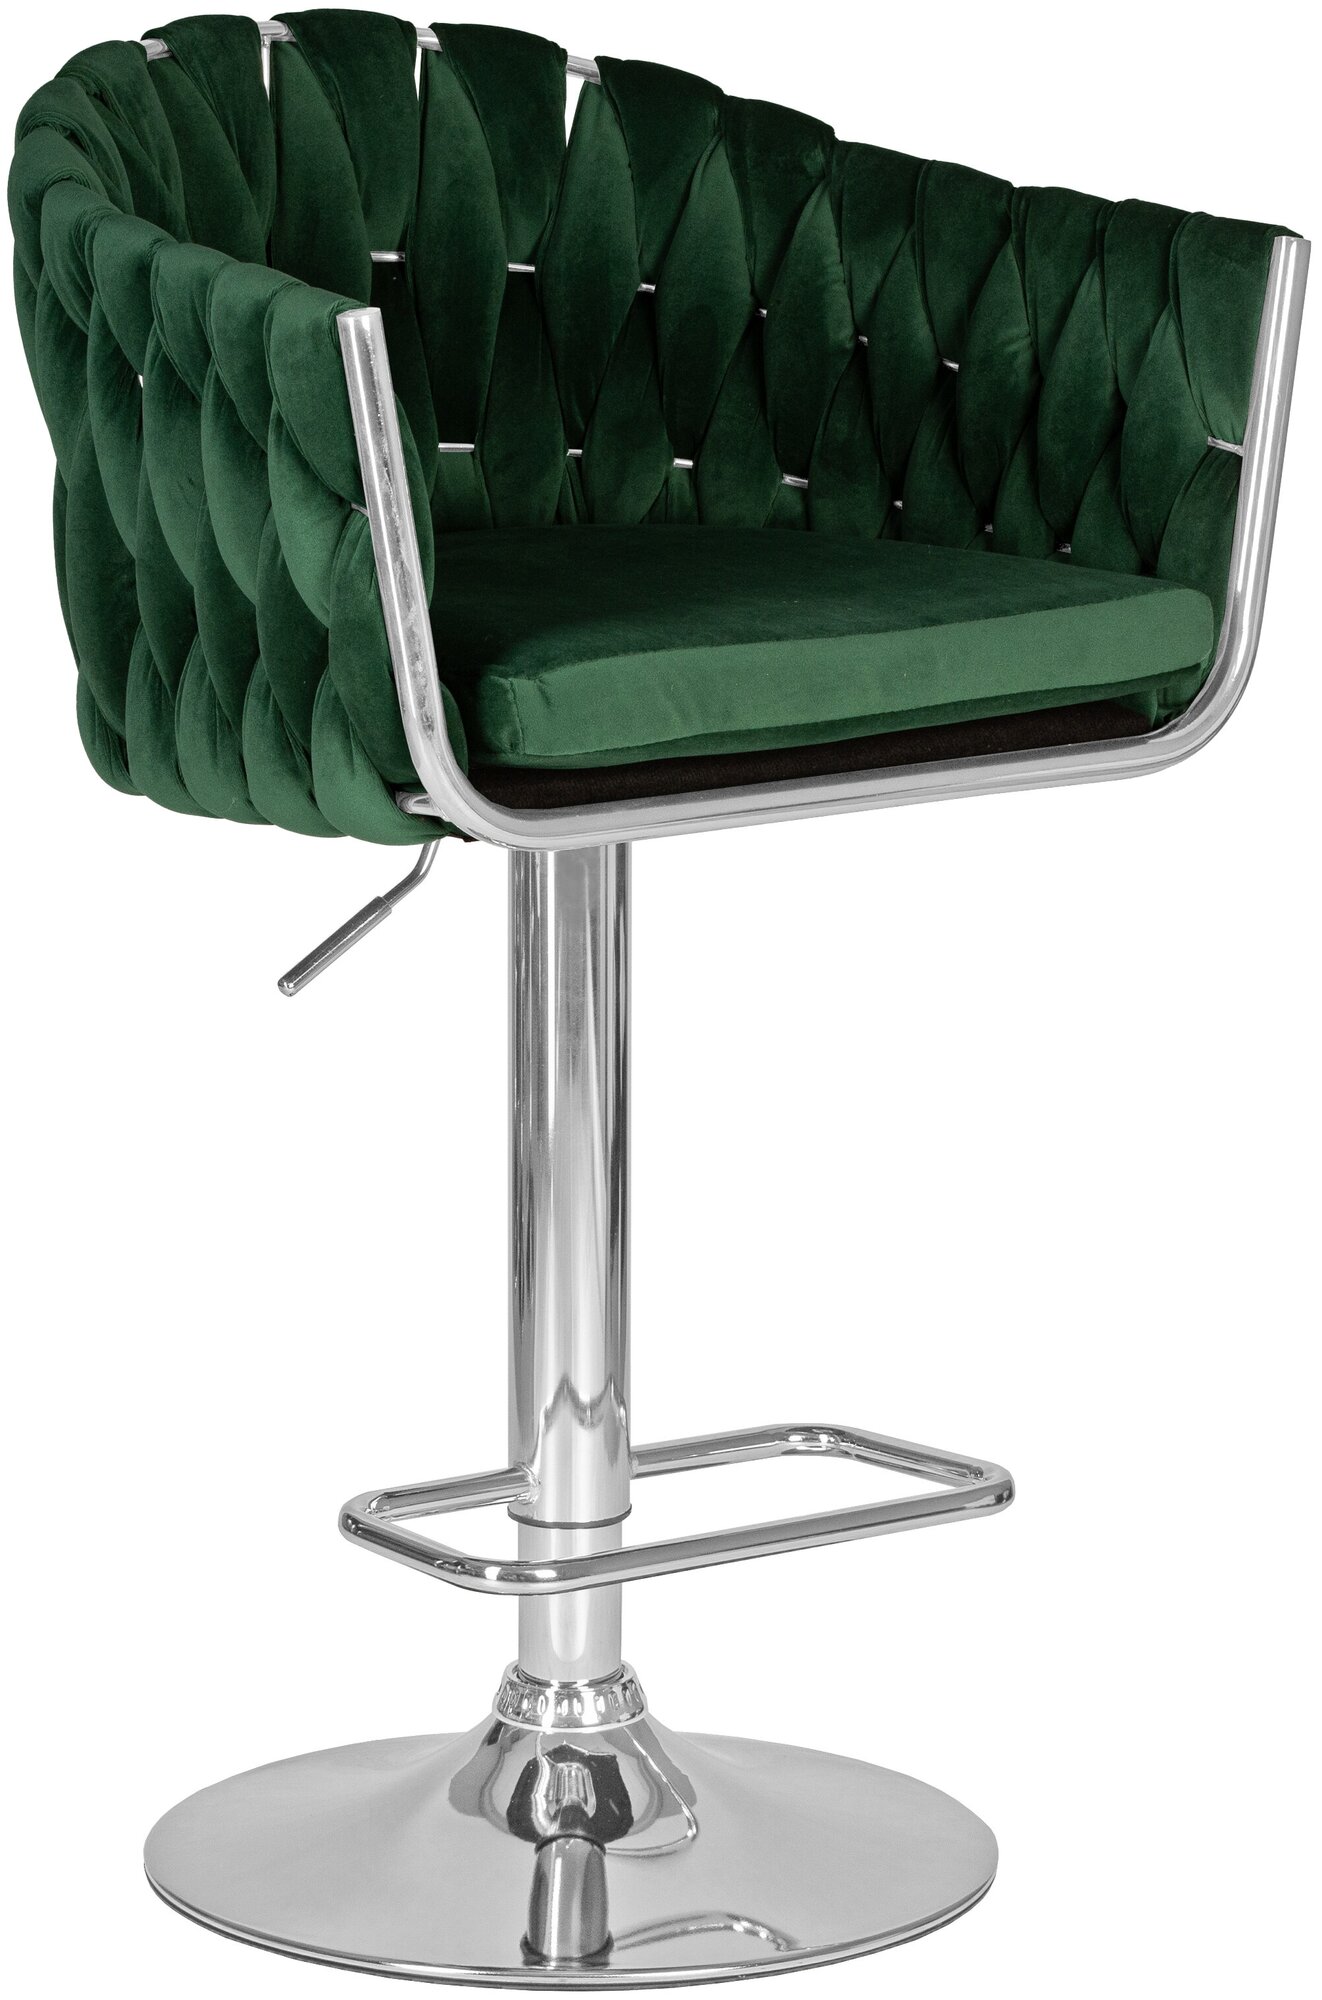 Стул барный MARCEL LM-9692 цвет сиденья зеленый велюр (MJ9-88), цвет основания хромированная сталь